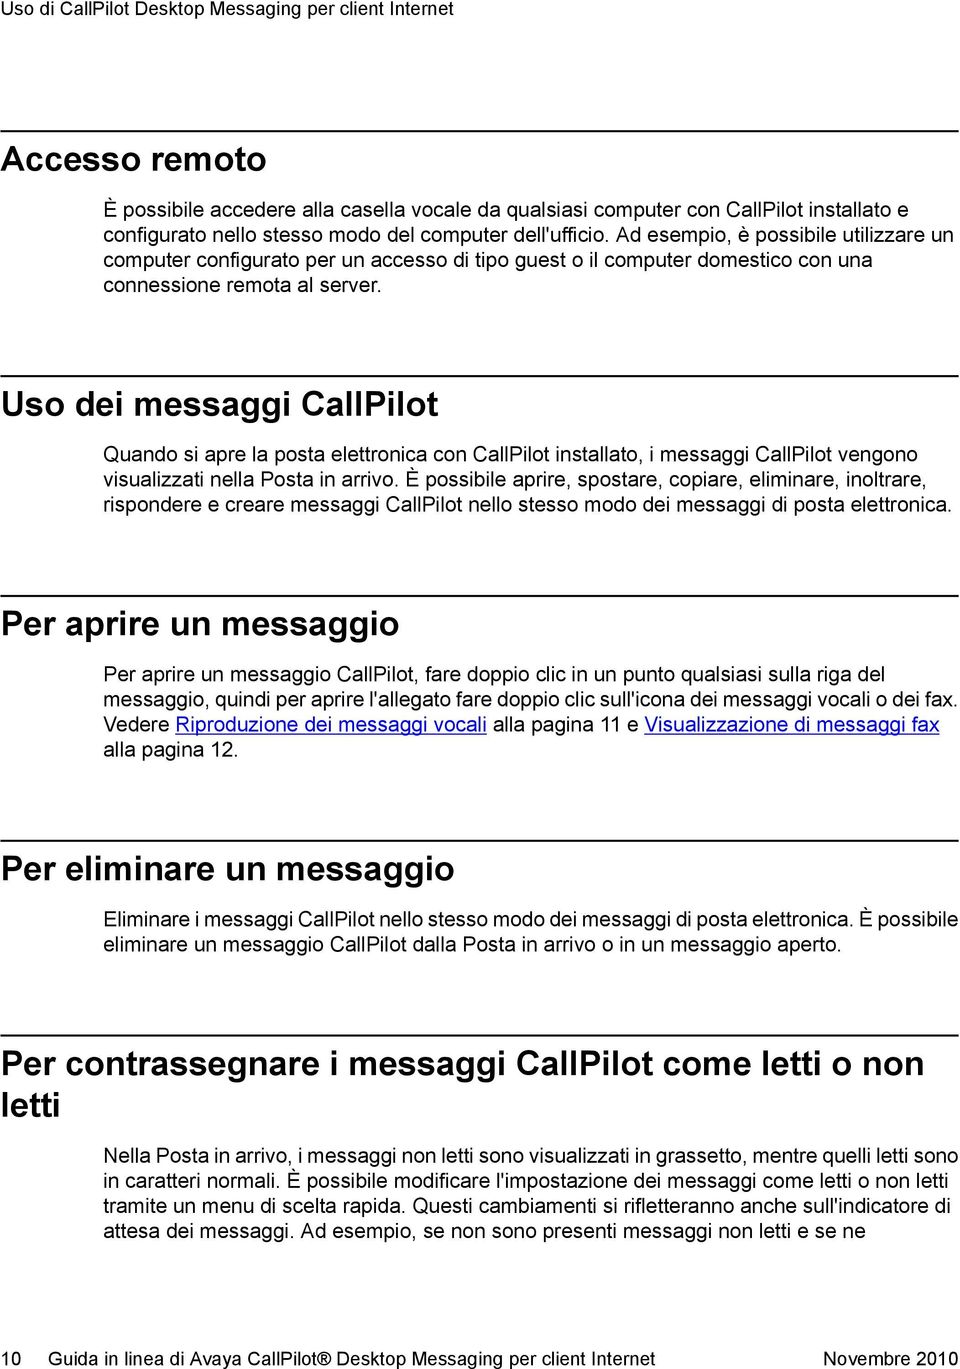 Uso dei messaggi CallPilot Quando si apre la posta elettronica con CallPilot installato, i messaggi CallPilot vengono visualizzati nella Posta in arrivo.